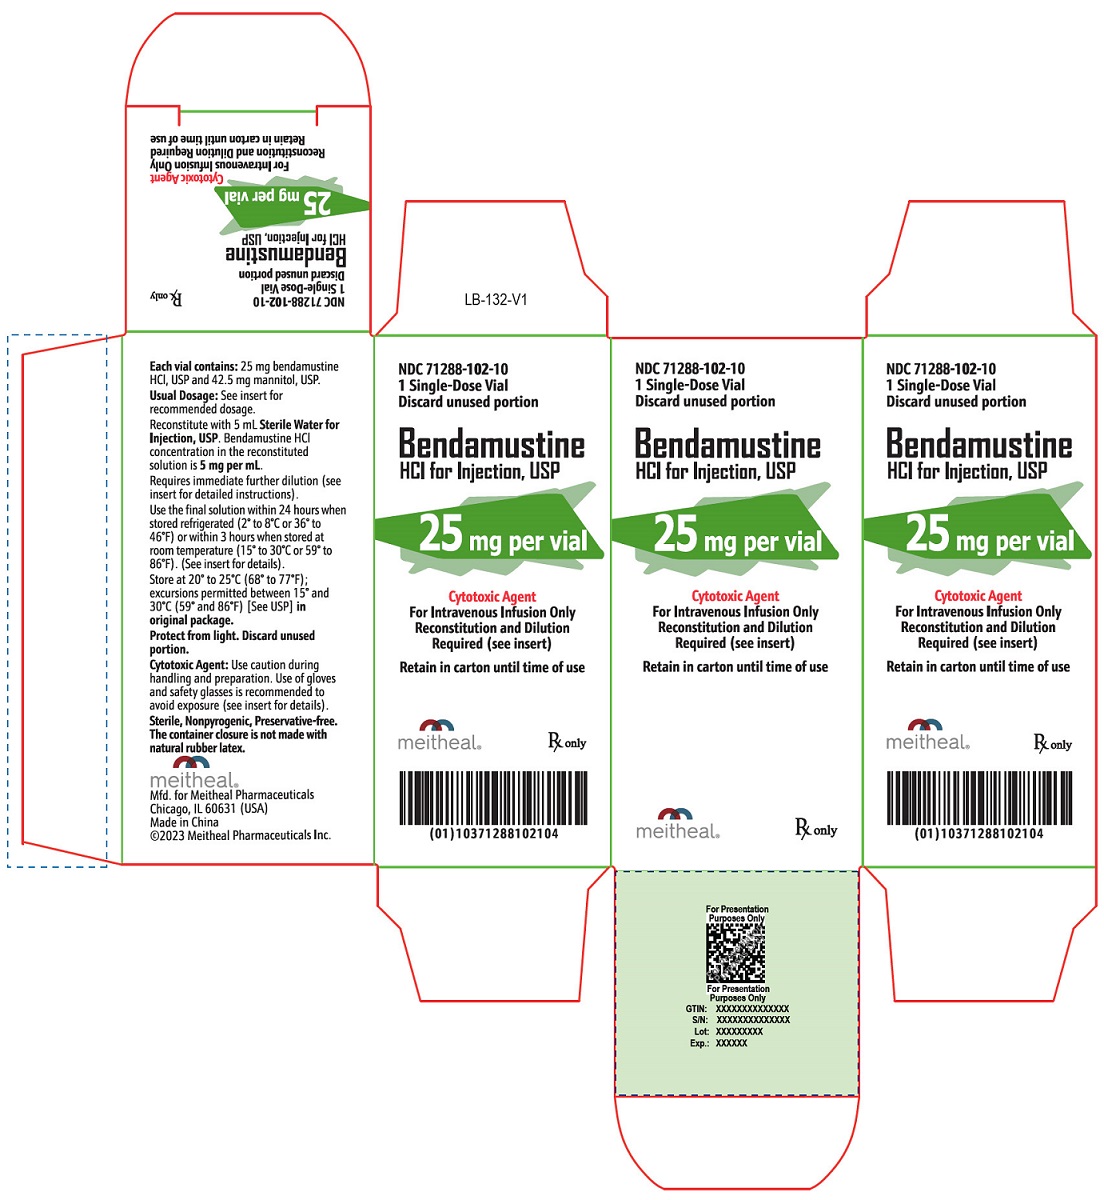 PRINCIPAL DISPLAY PANEL – Bendamustine HCl for Injection, USP 25 mg Carton